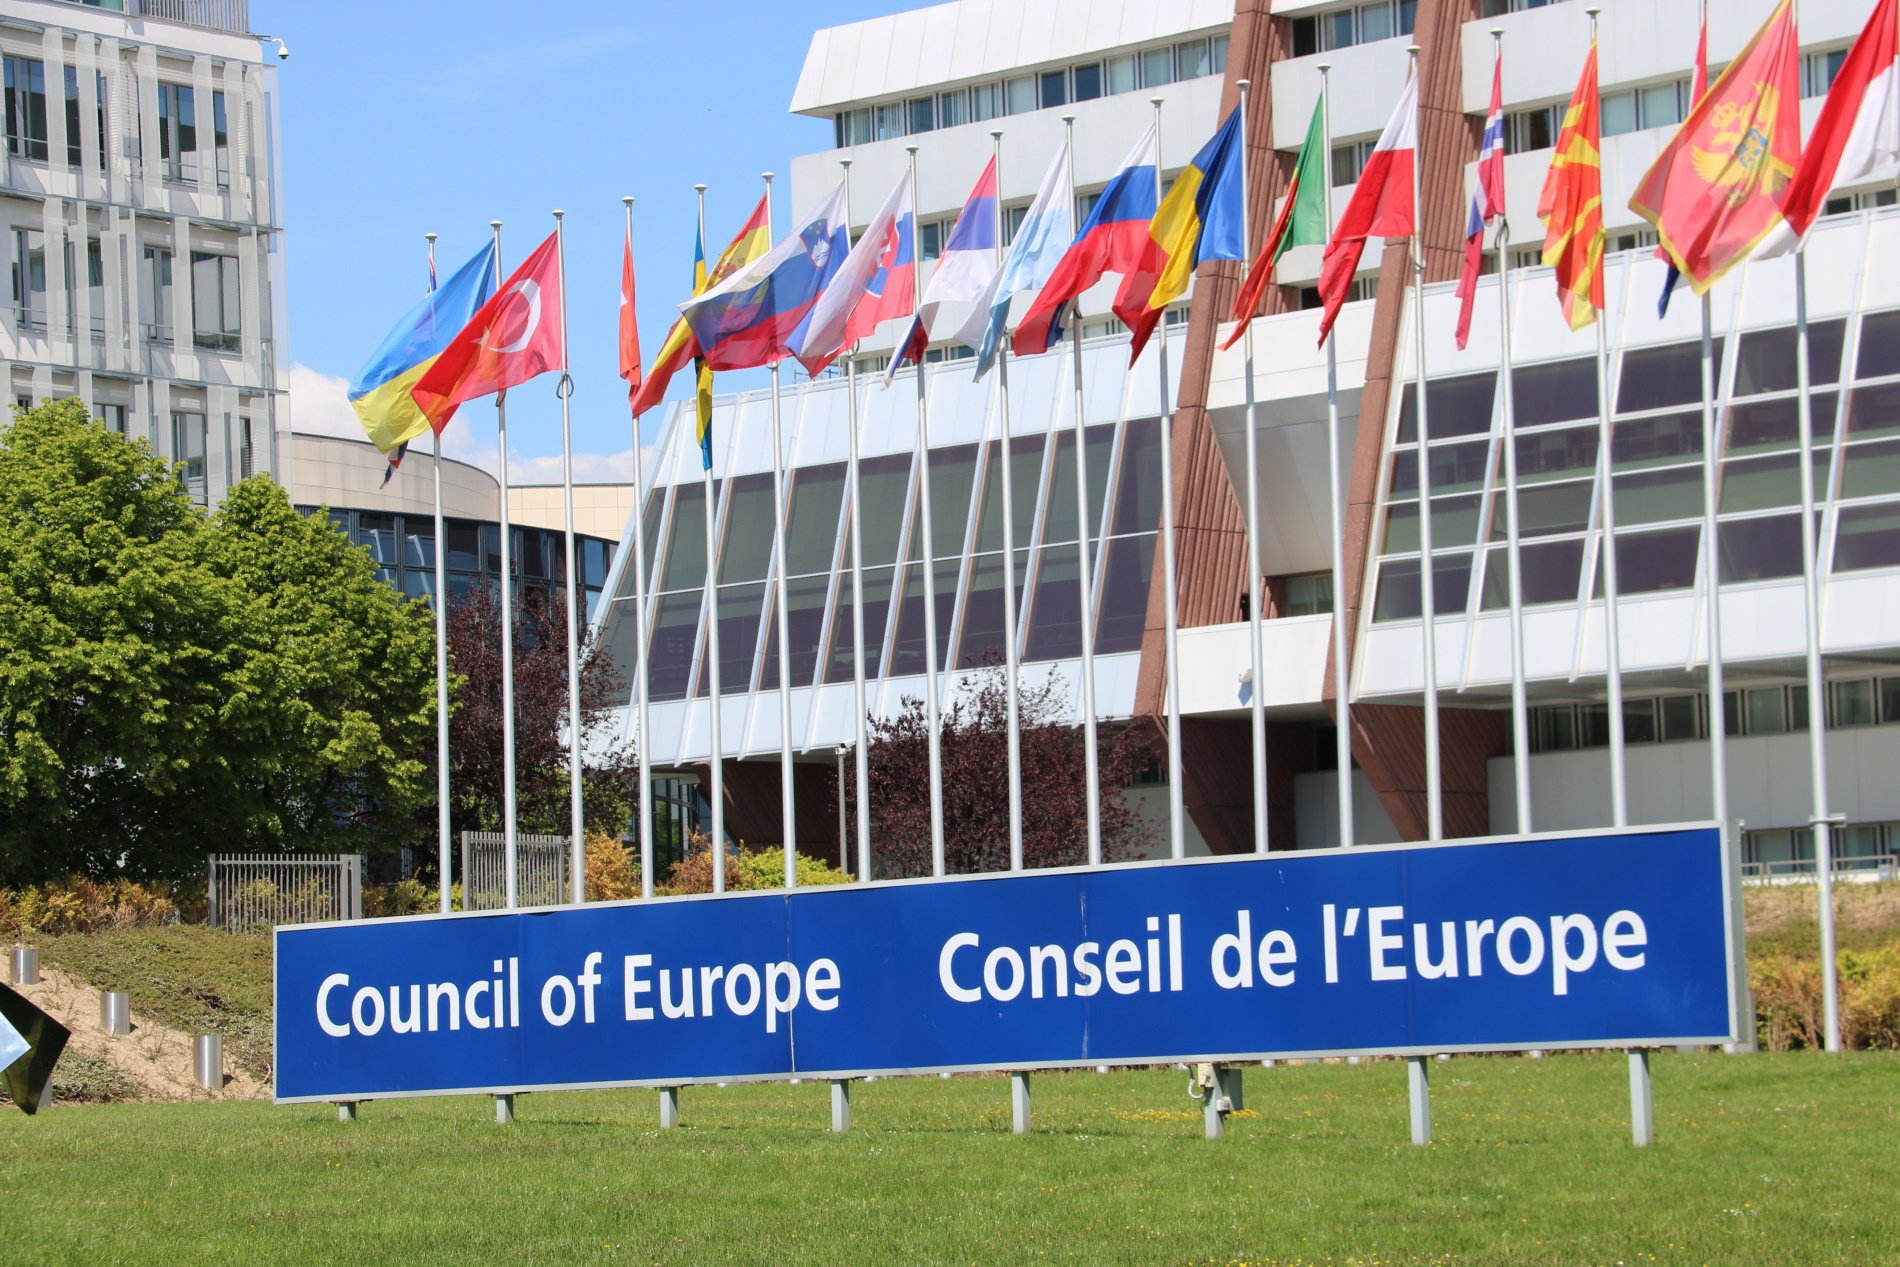 Una comisaria del Consejo de Europa reacciona al caso Pegasus: "Estoy alarmada"